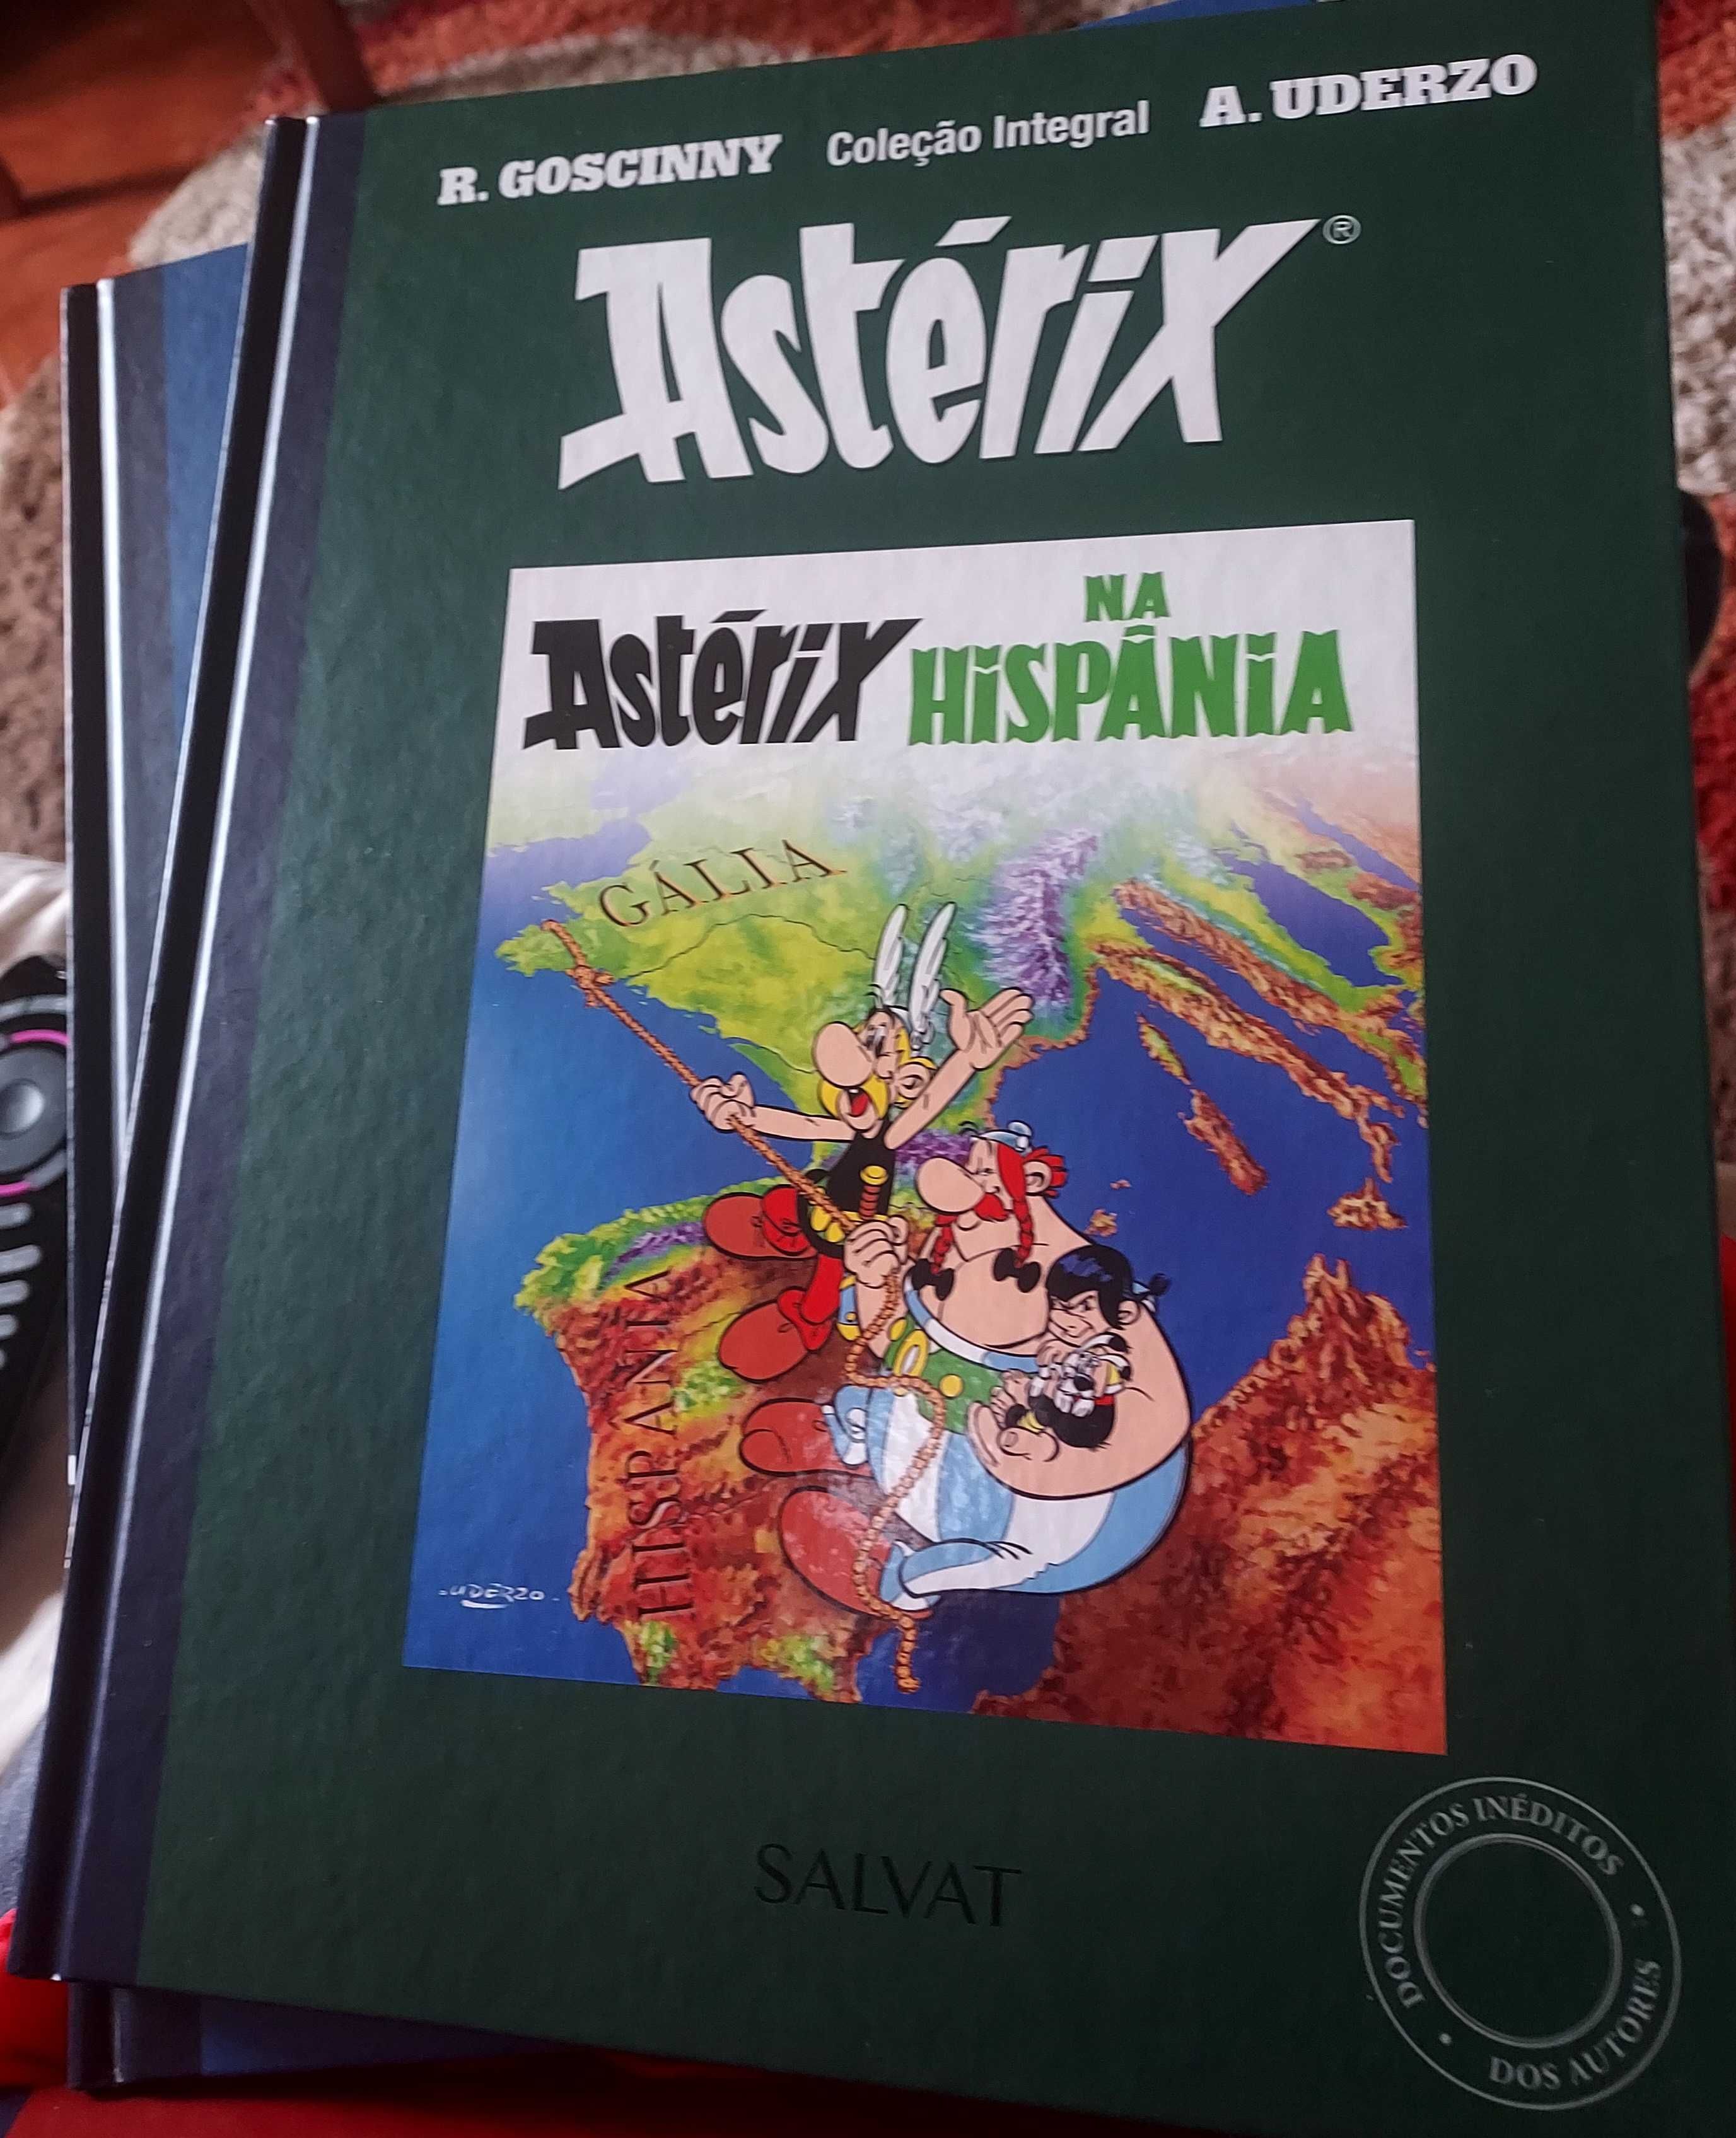 Asterix coleção integral  25 € total - 4 livros 1,2,3,e 4 novos